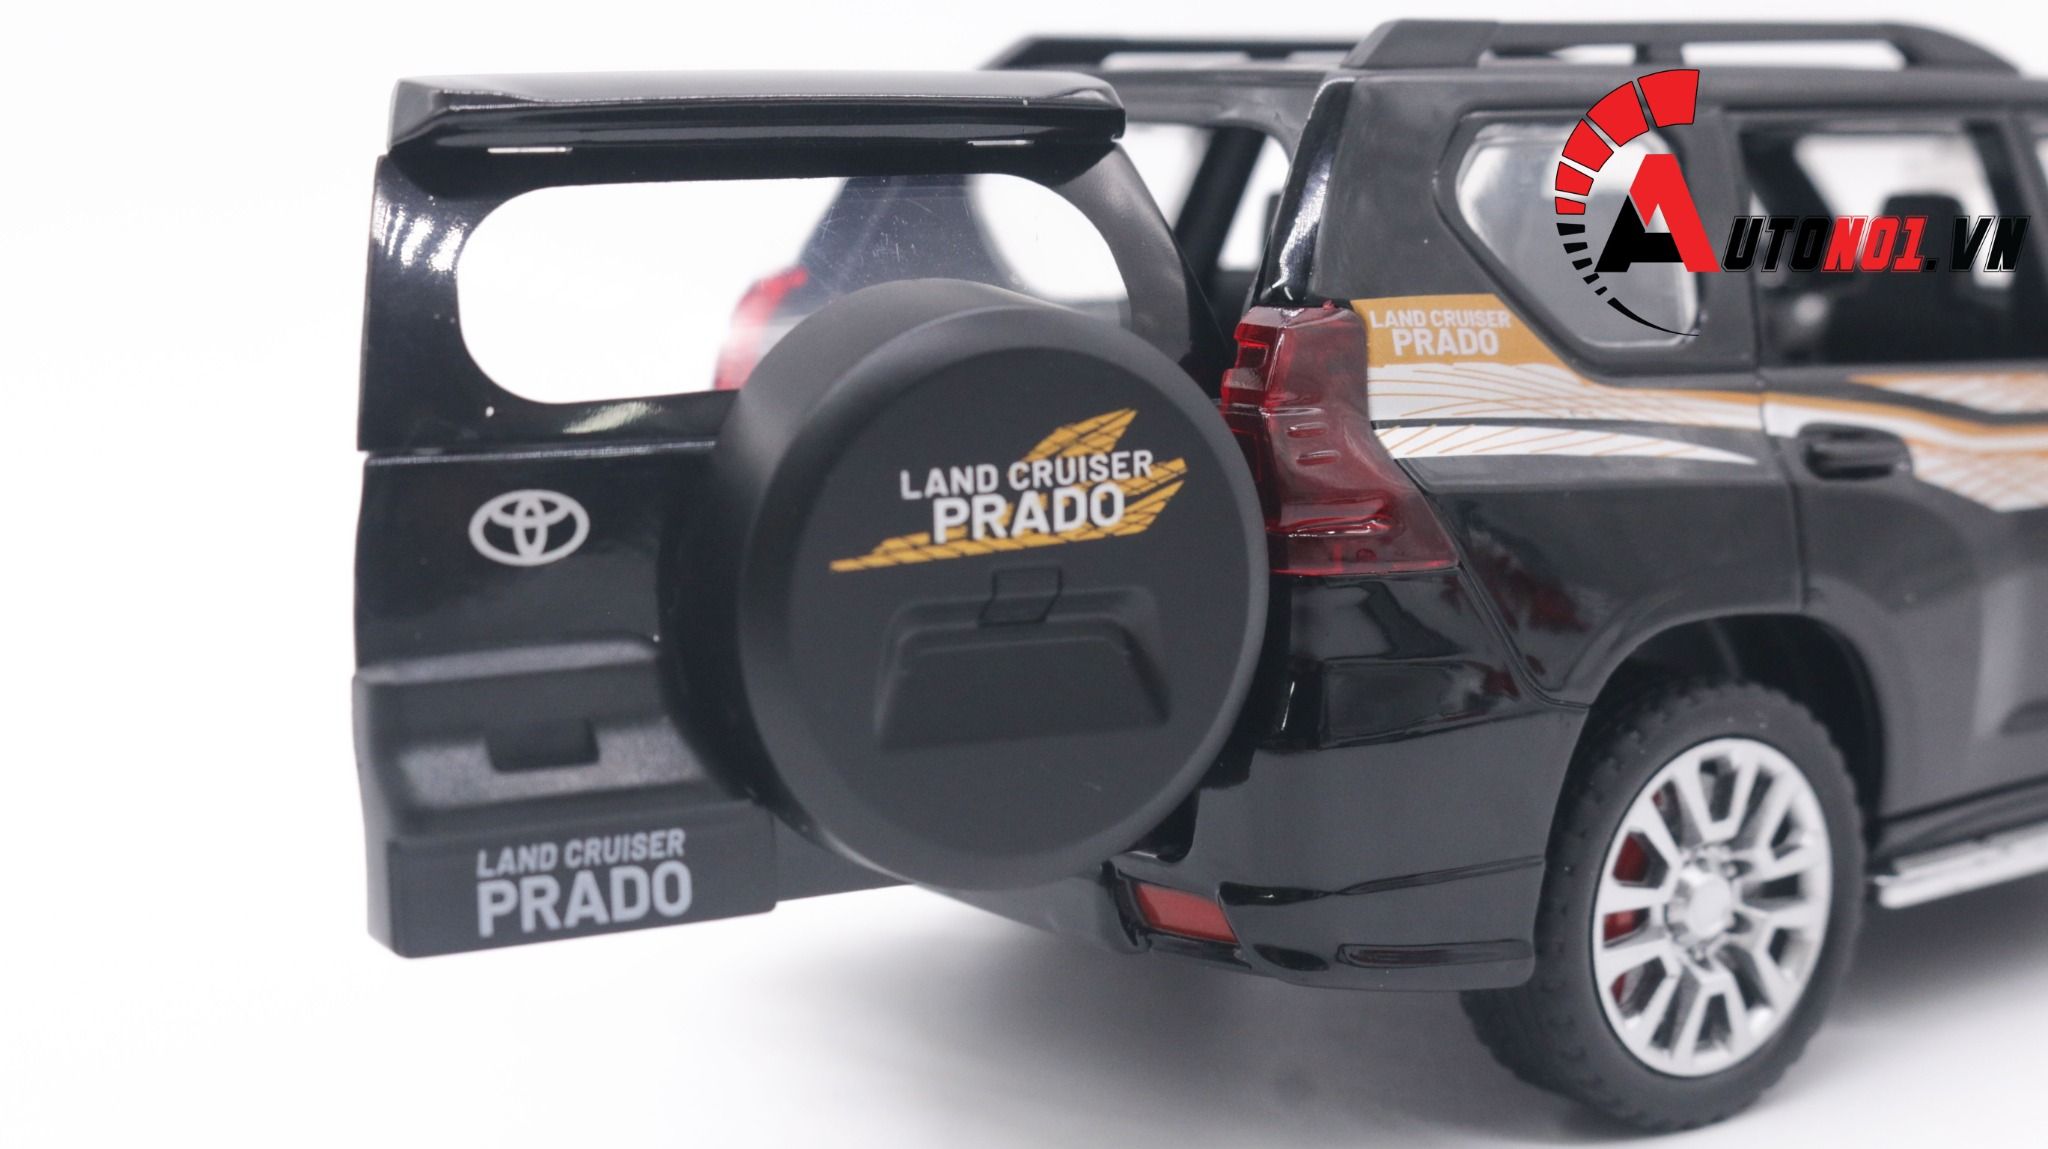  Mô hình xe ô tô Toyota Landcruiser Prado SUV full open tỉ lệ 1:24 Alloy OT233 